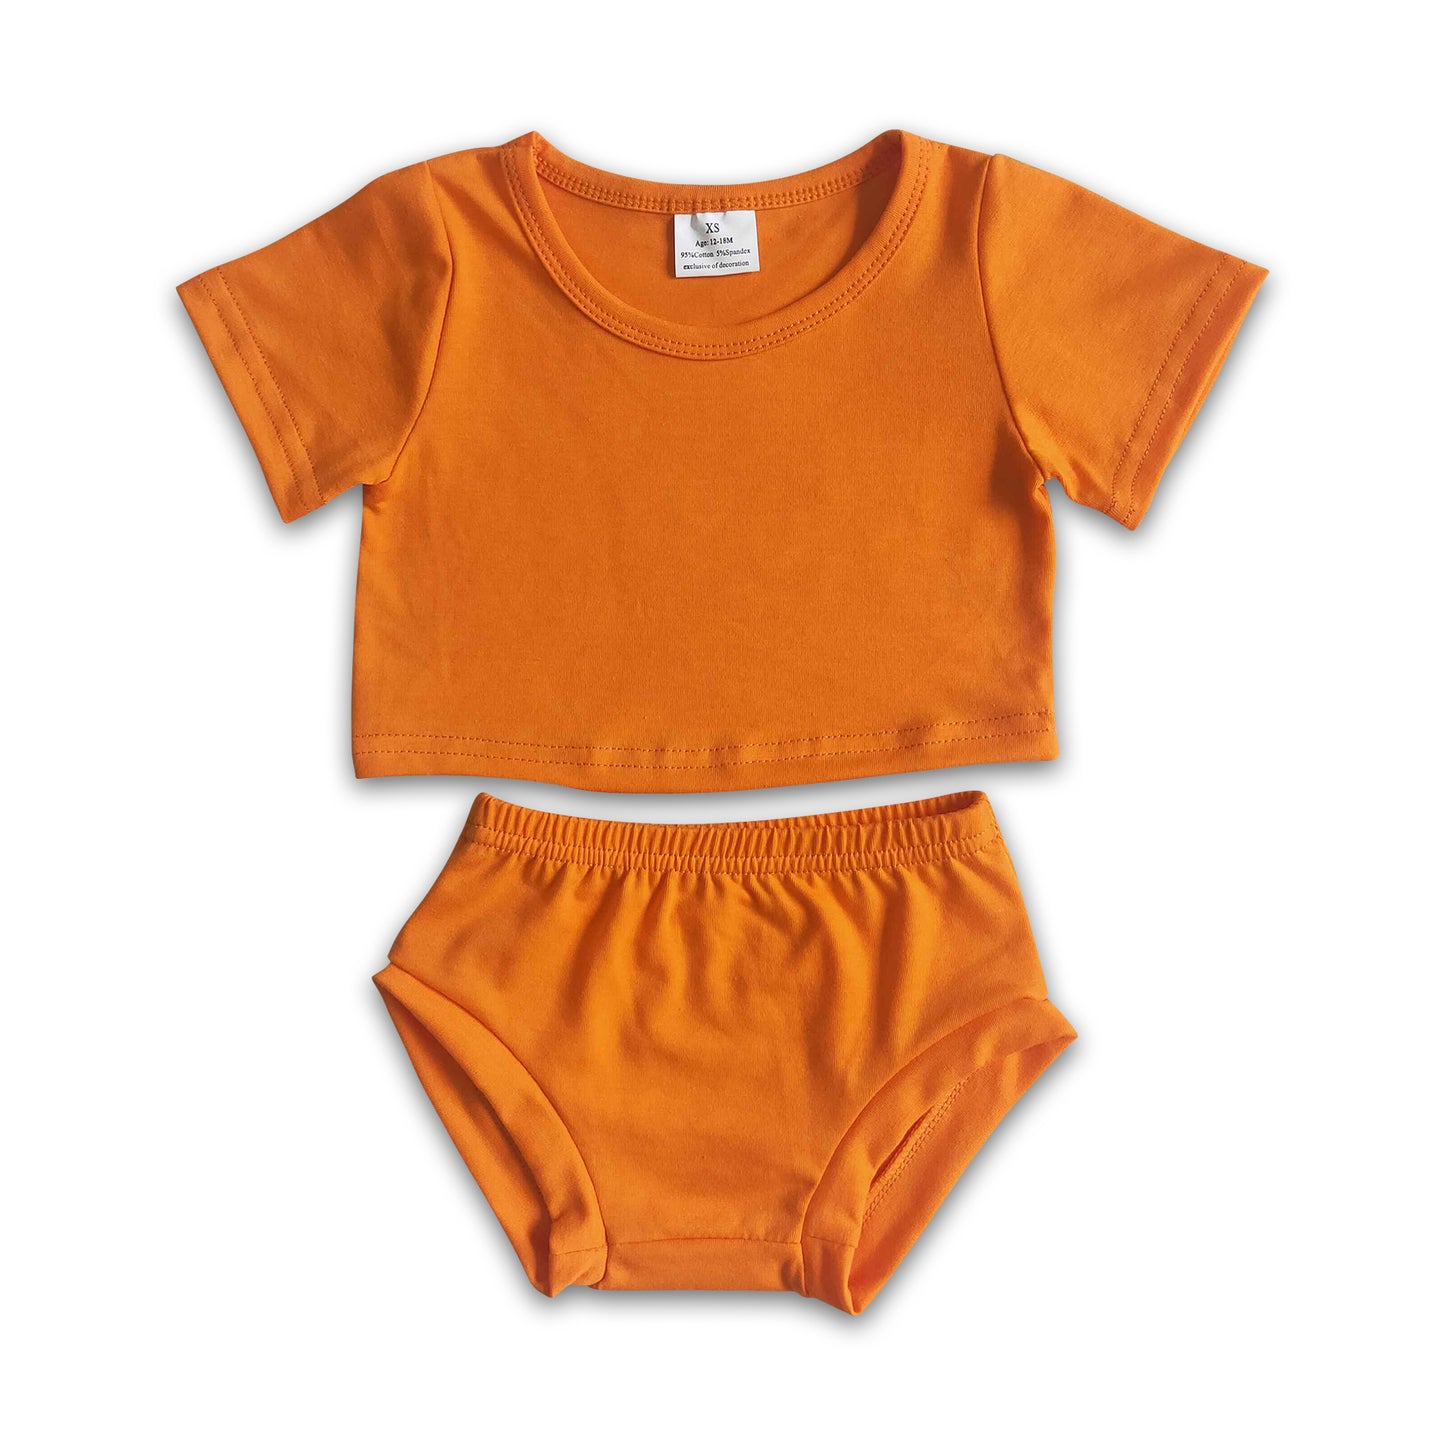 Oranged bummies set match spiderweb maxi dress baby girls Halloween set